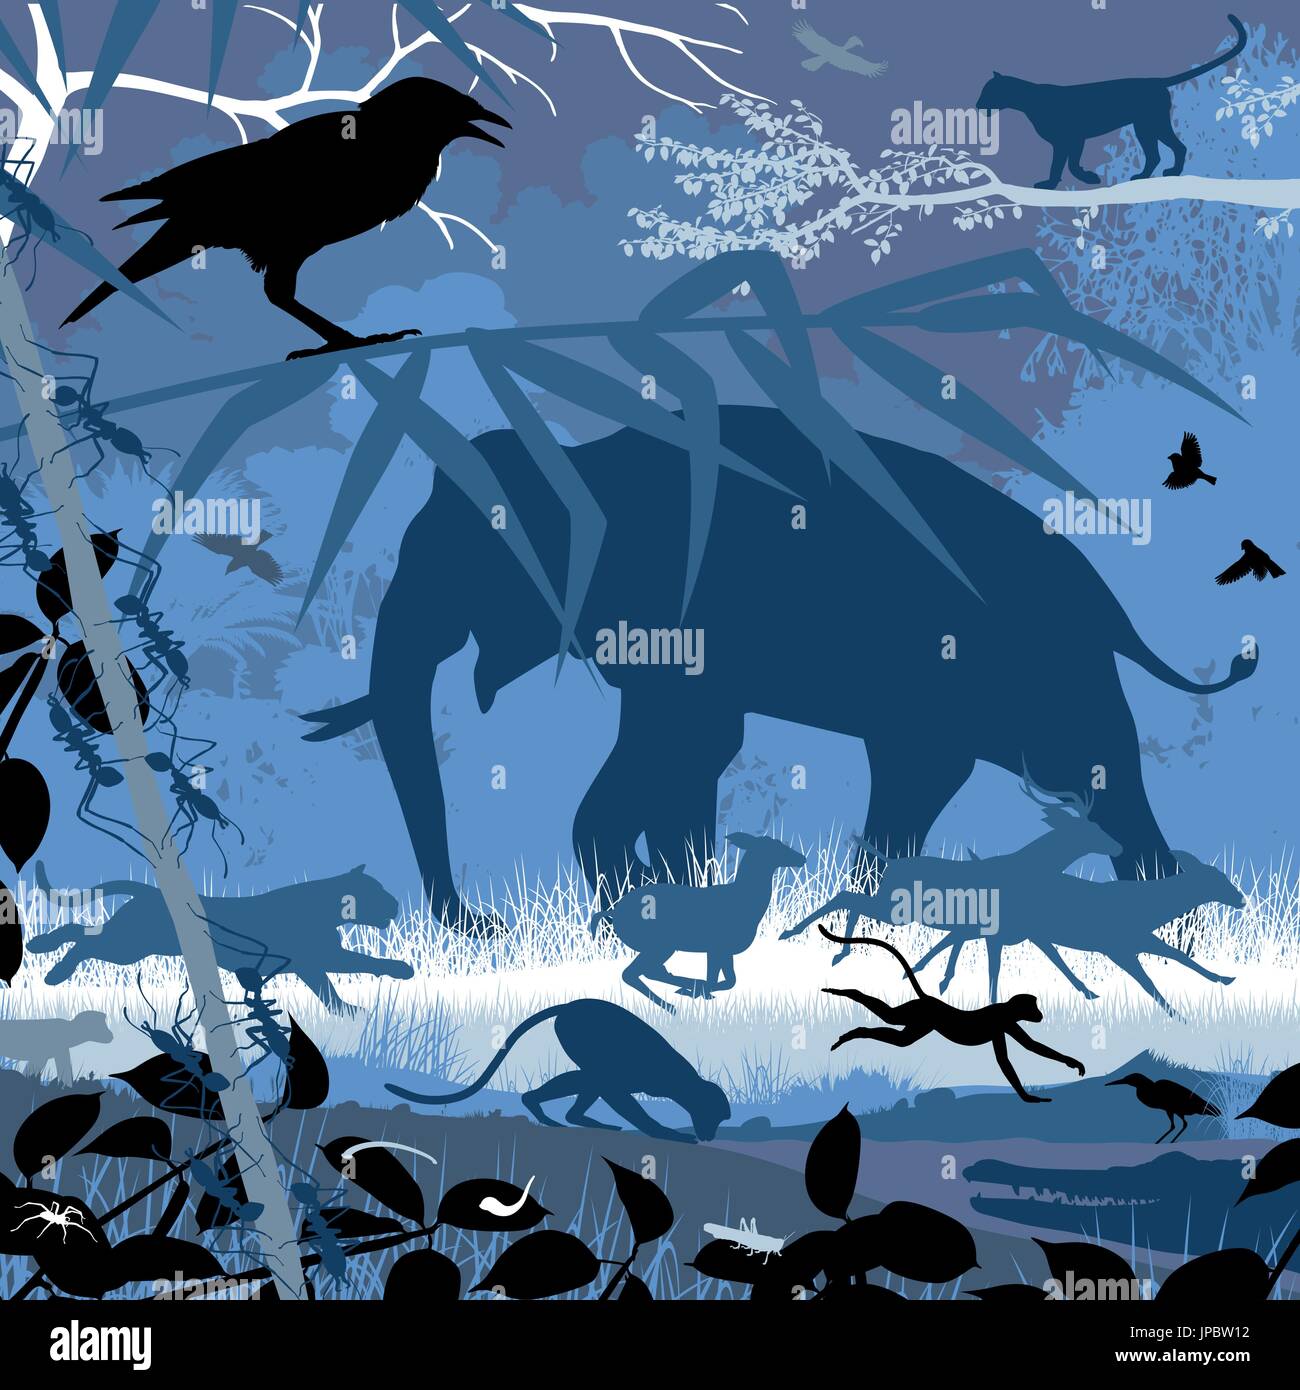 Bearbeitbares Vektor-Illustration der verschiedenen asiatischen Tierwelt im natürlichen Lebensraum Stock Vektor